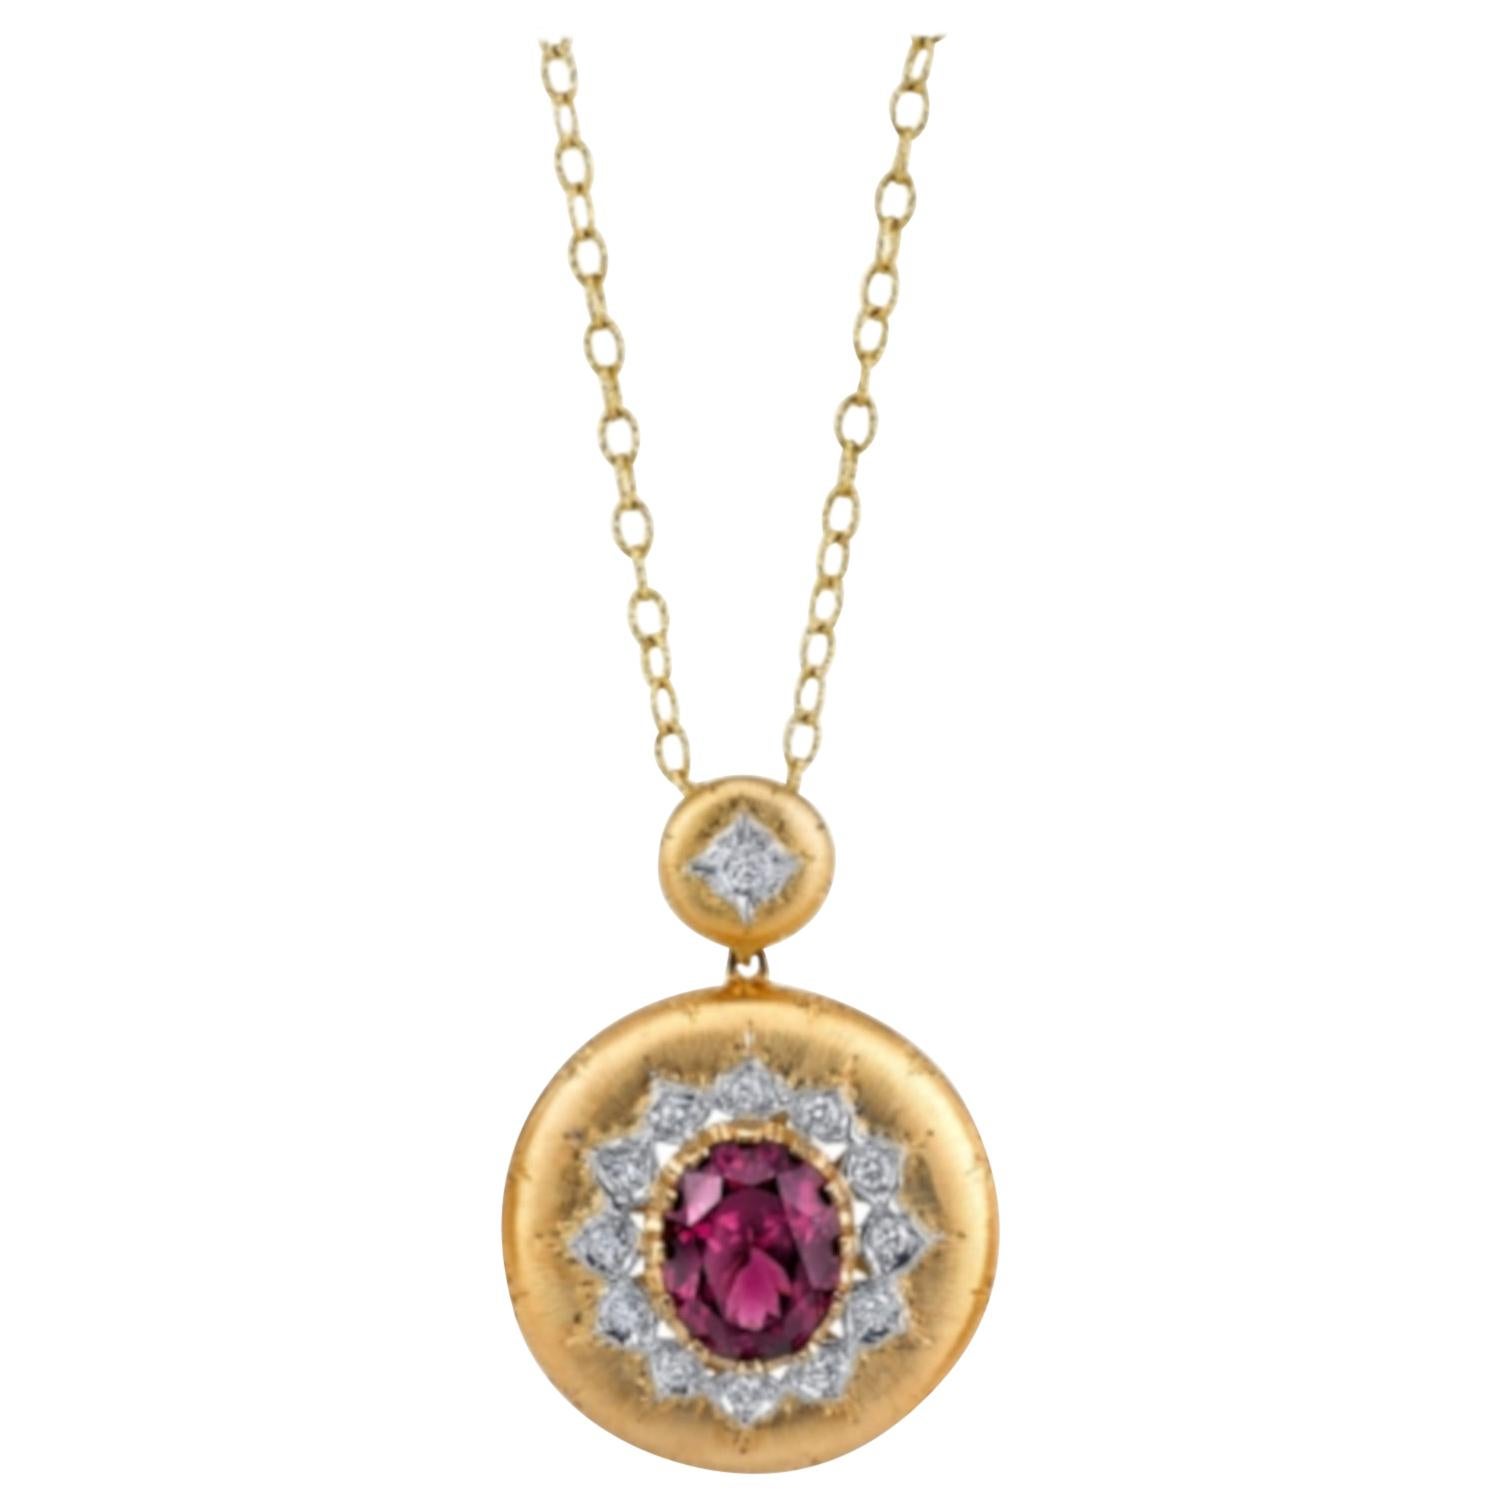 9.14 ct. Rhodolite Garnet and Diamond Florentine Design Necklace in Yellow Gold